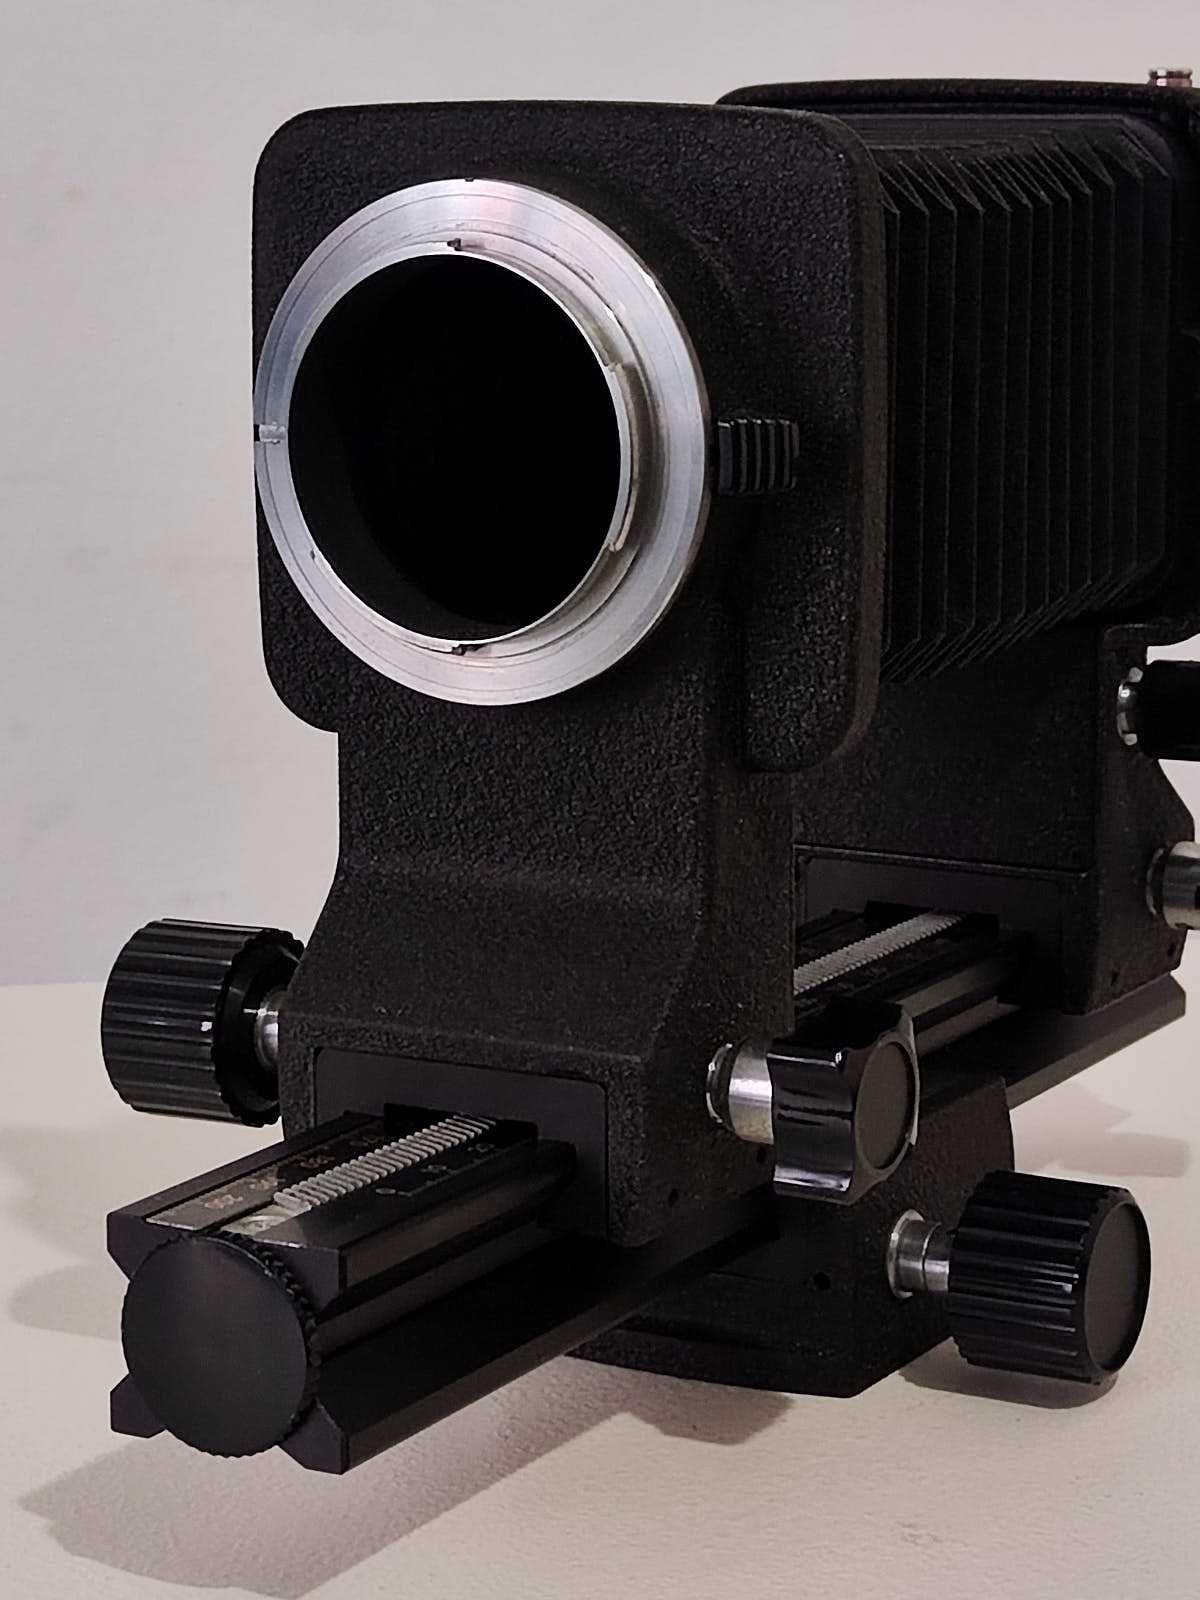 Fole extensão Nikon Bellows PB-6 com oferta do cabo disparador AR-7